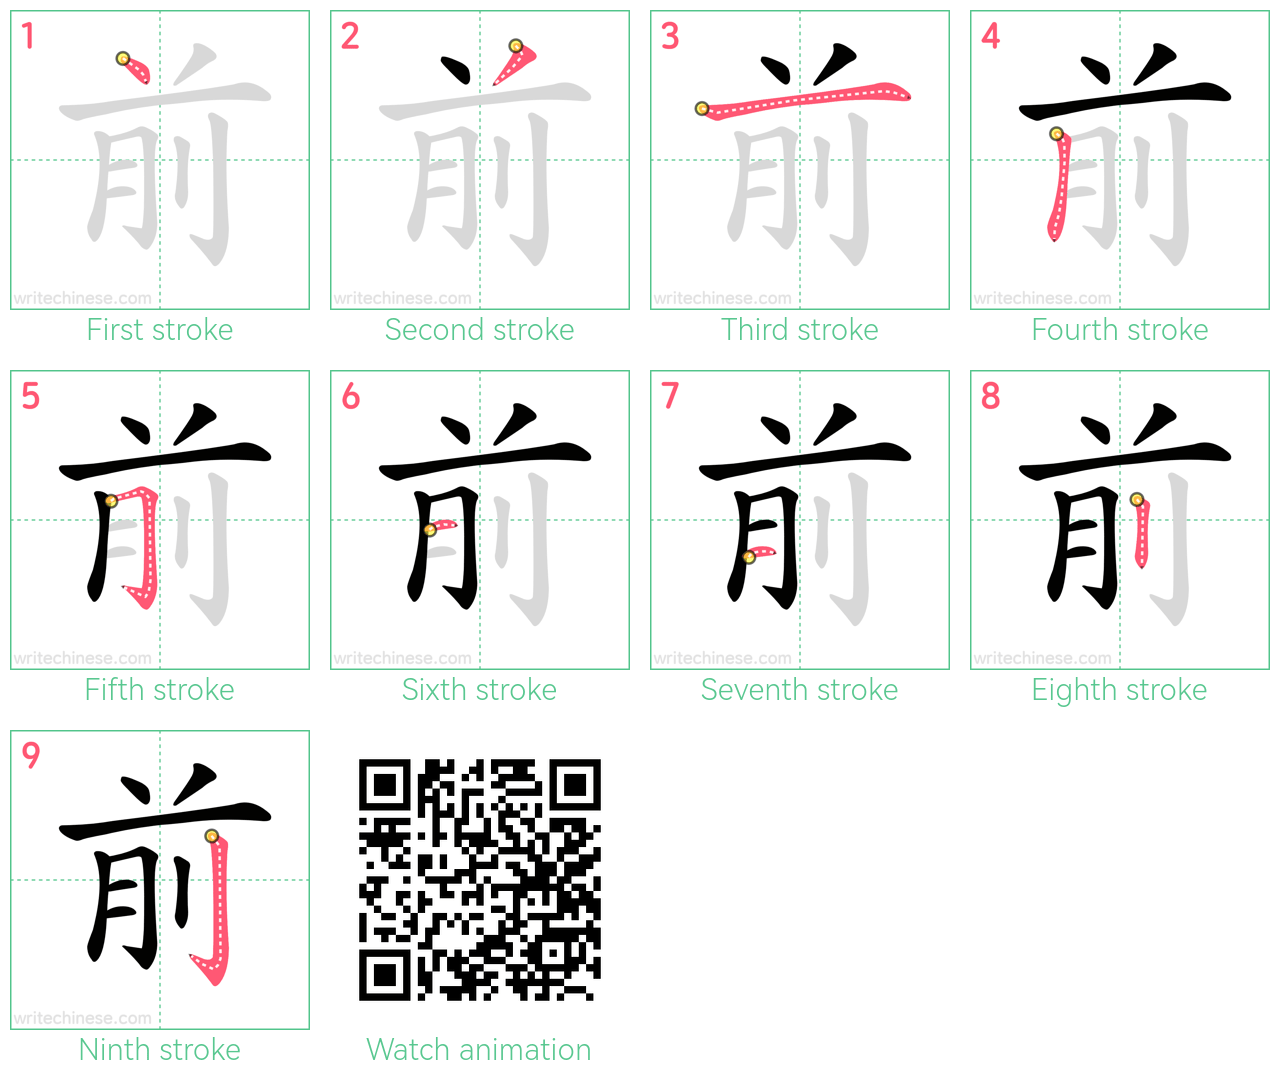 前 step-by-step stroke order diagrams